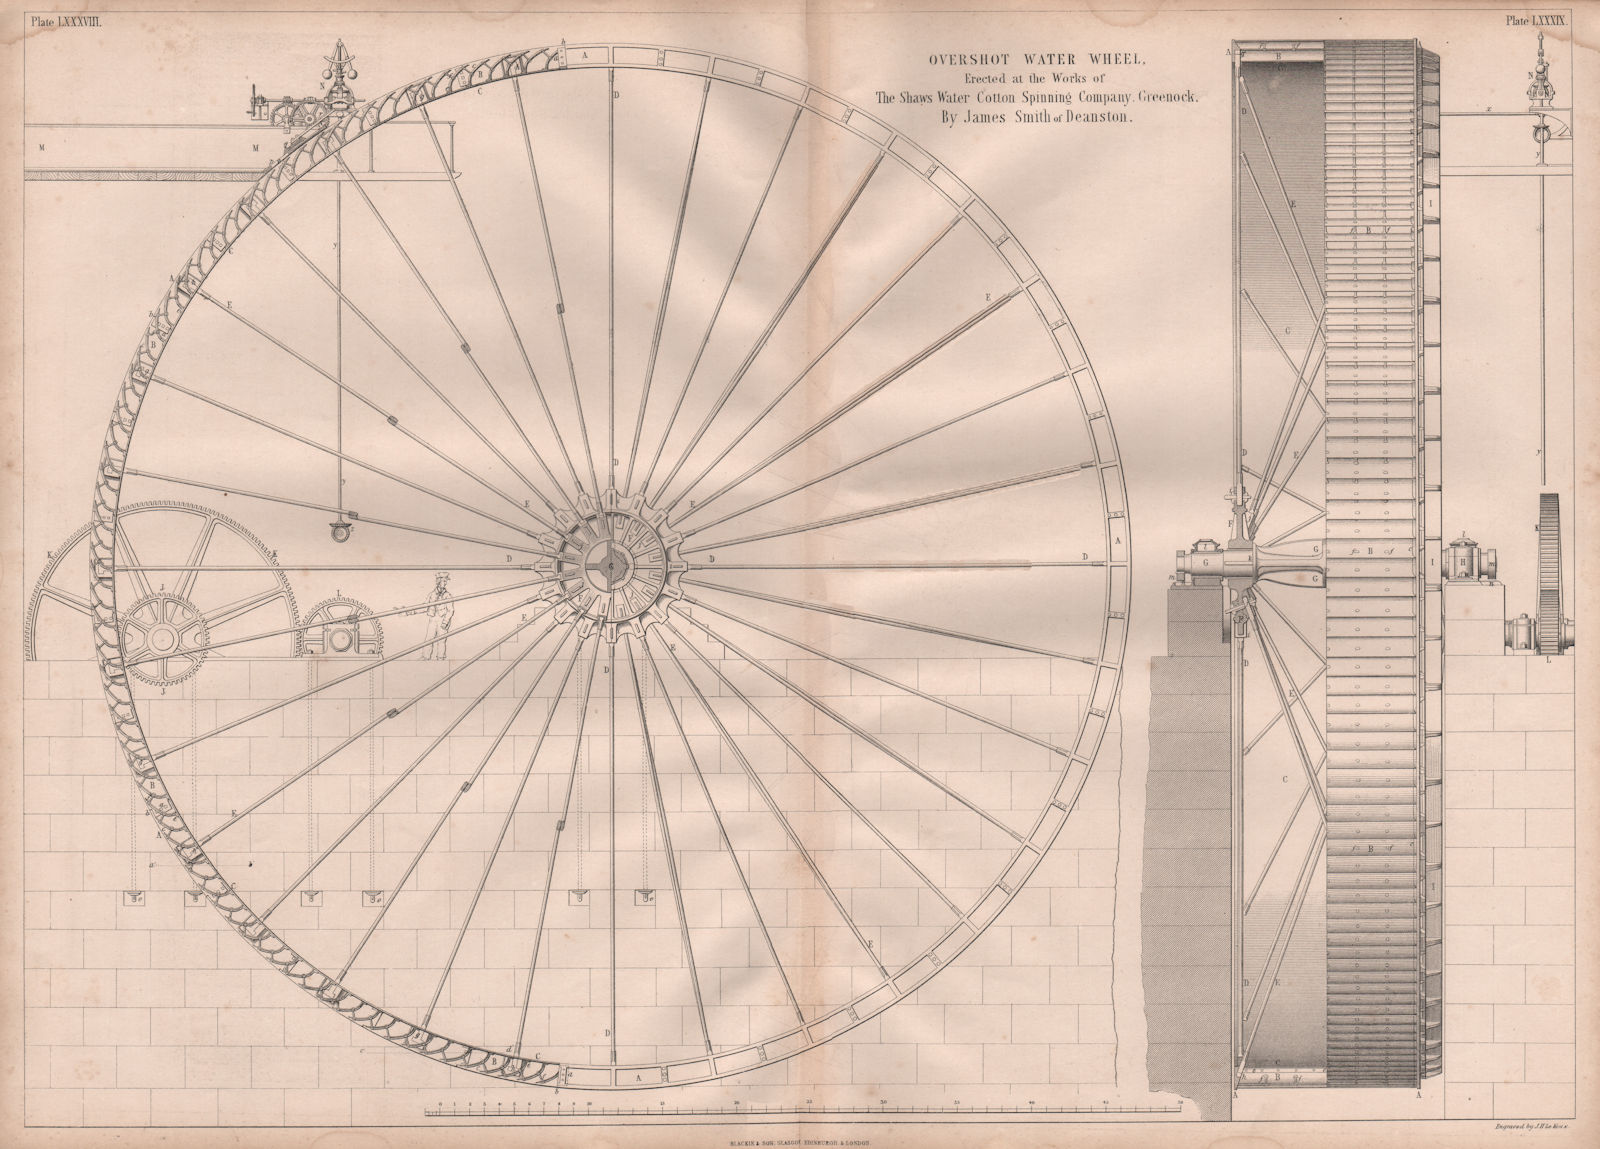 19C ENGINEERING DRAWING Overshot water wheel Shaws Water Cotton Spinning Co 1847